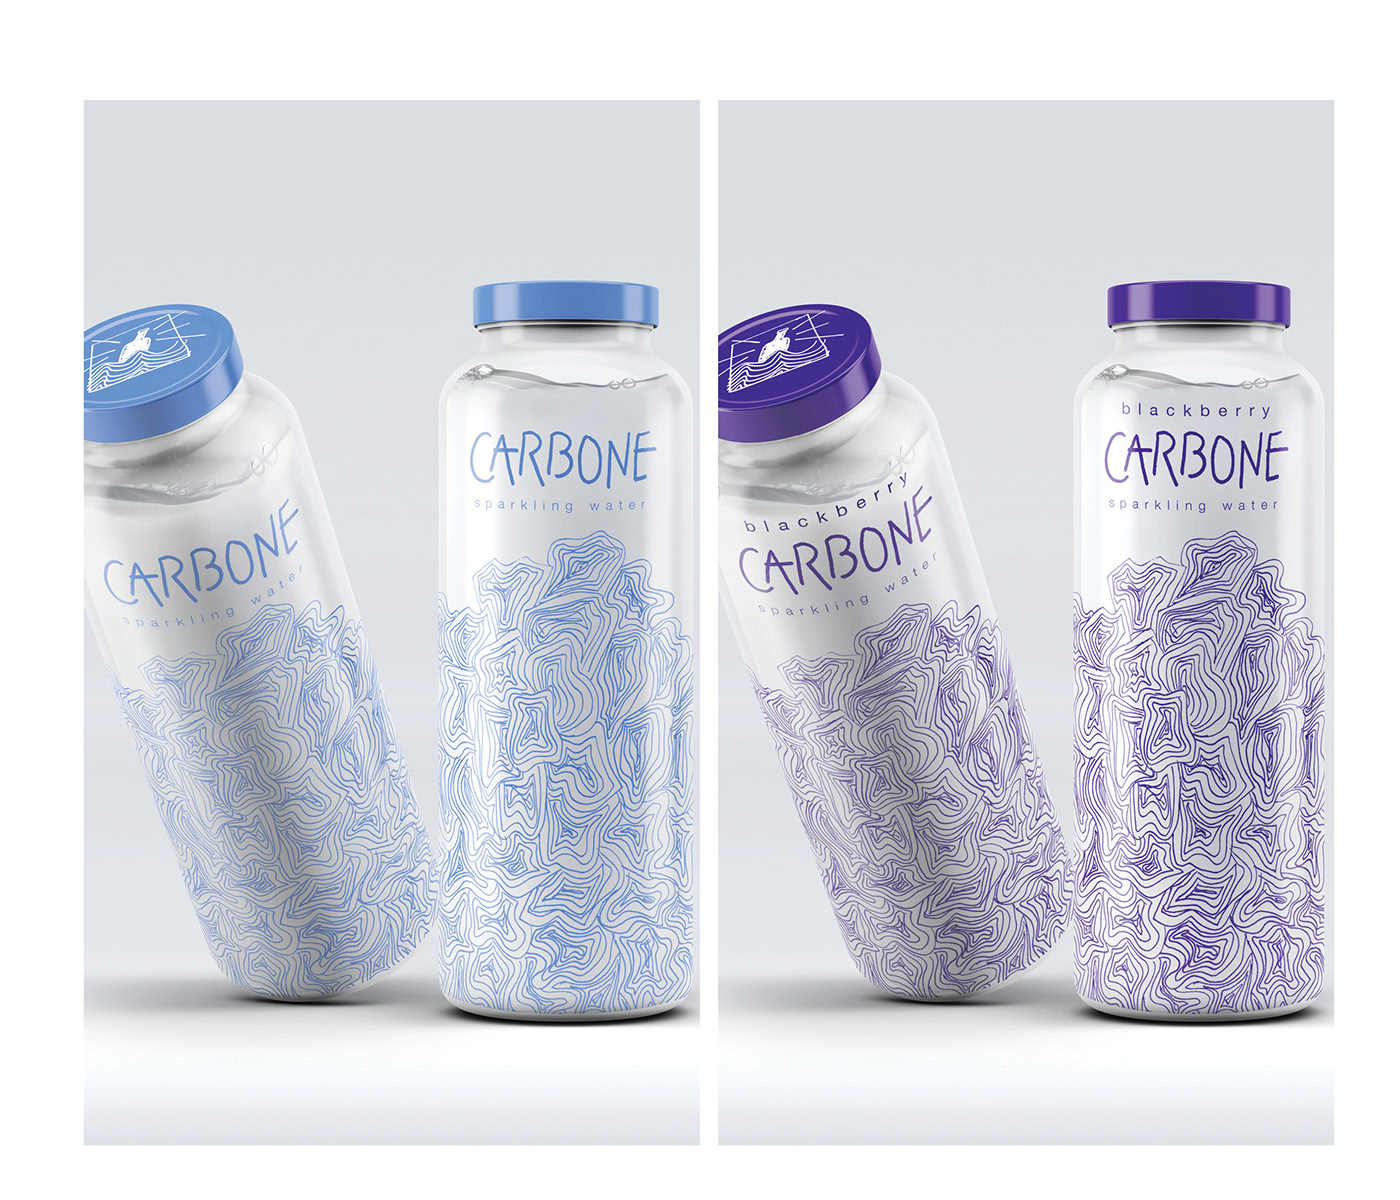 water sparkling water package design  bottle design ILLUSTRATION  line art colorful